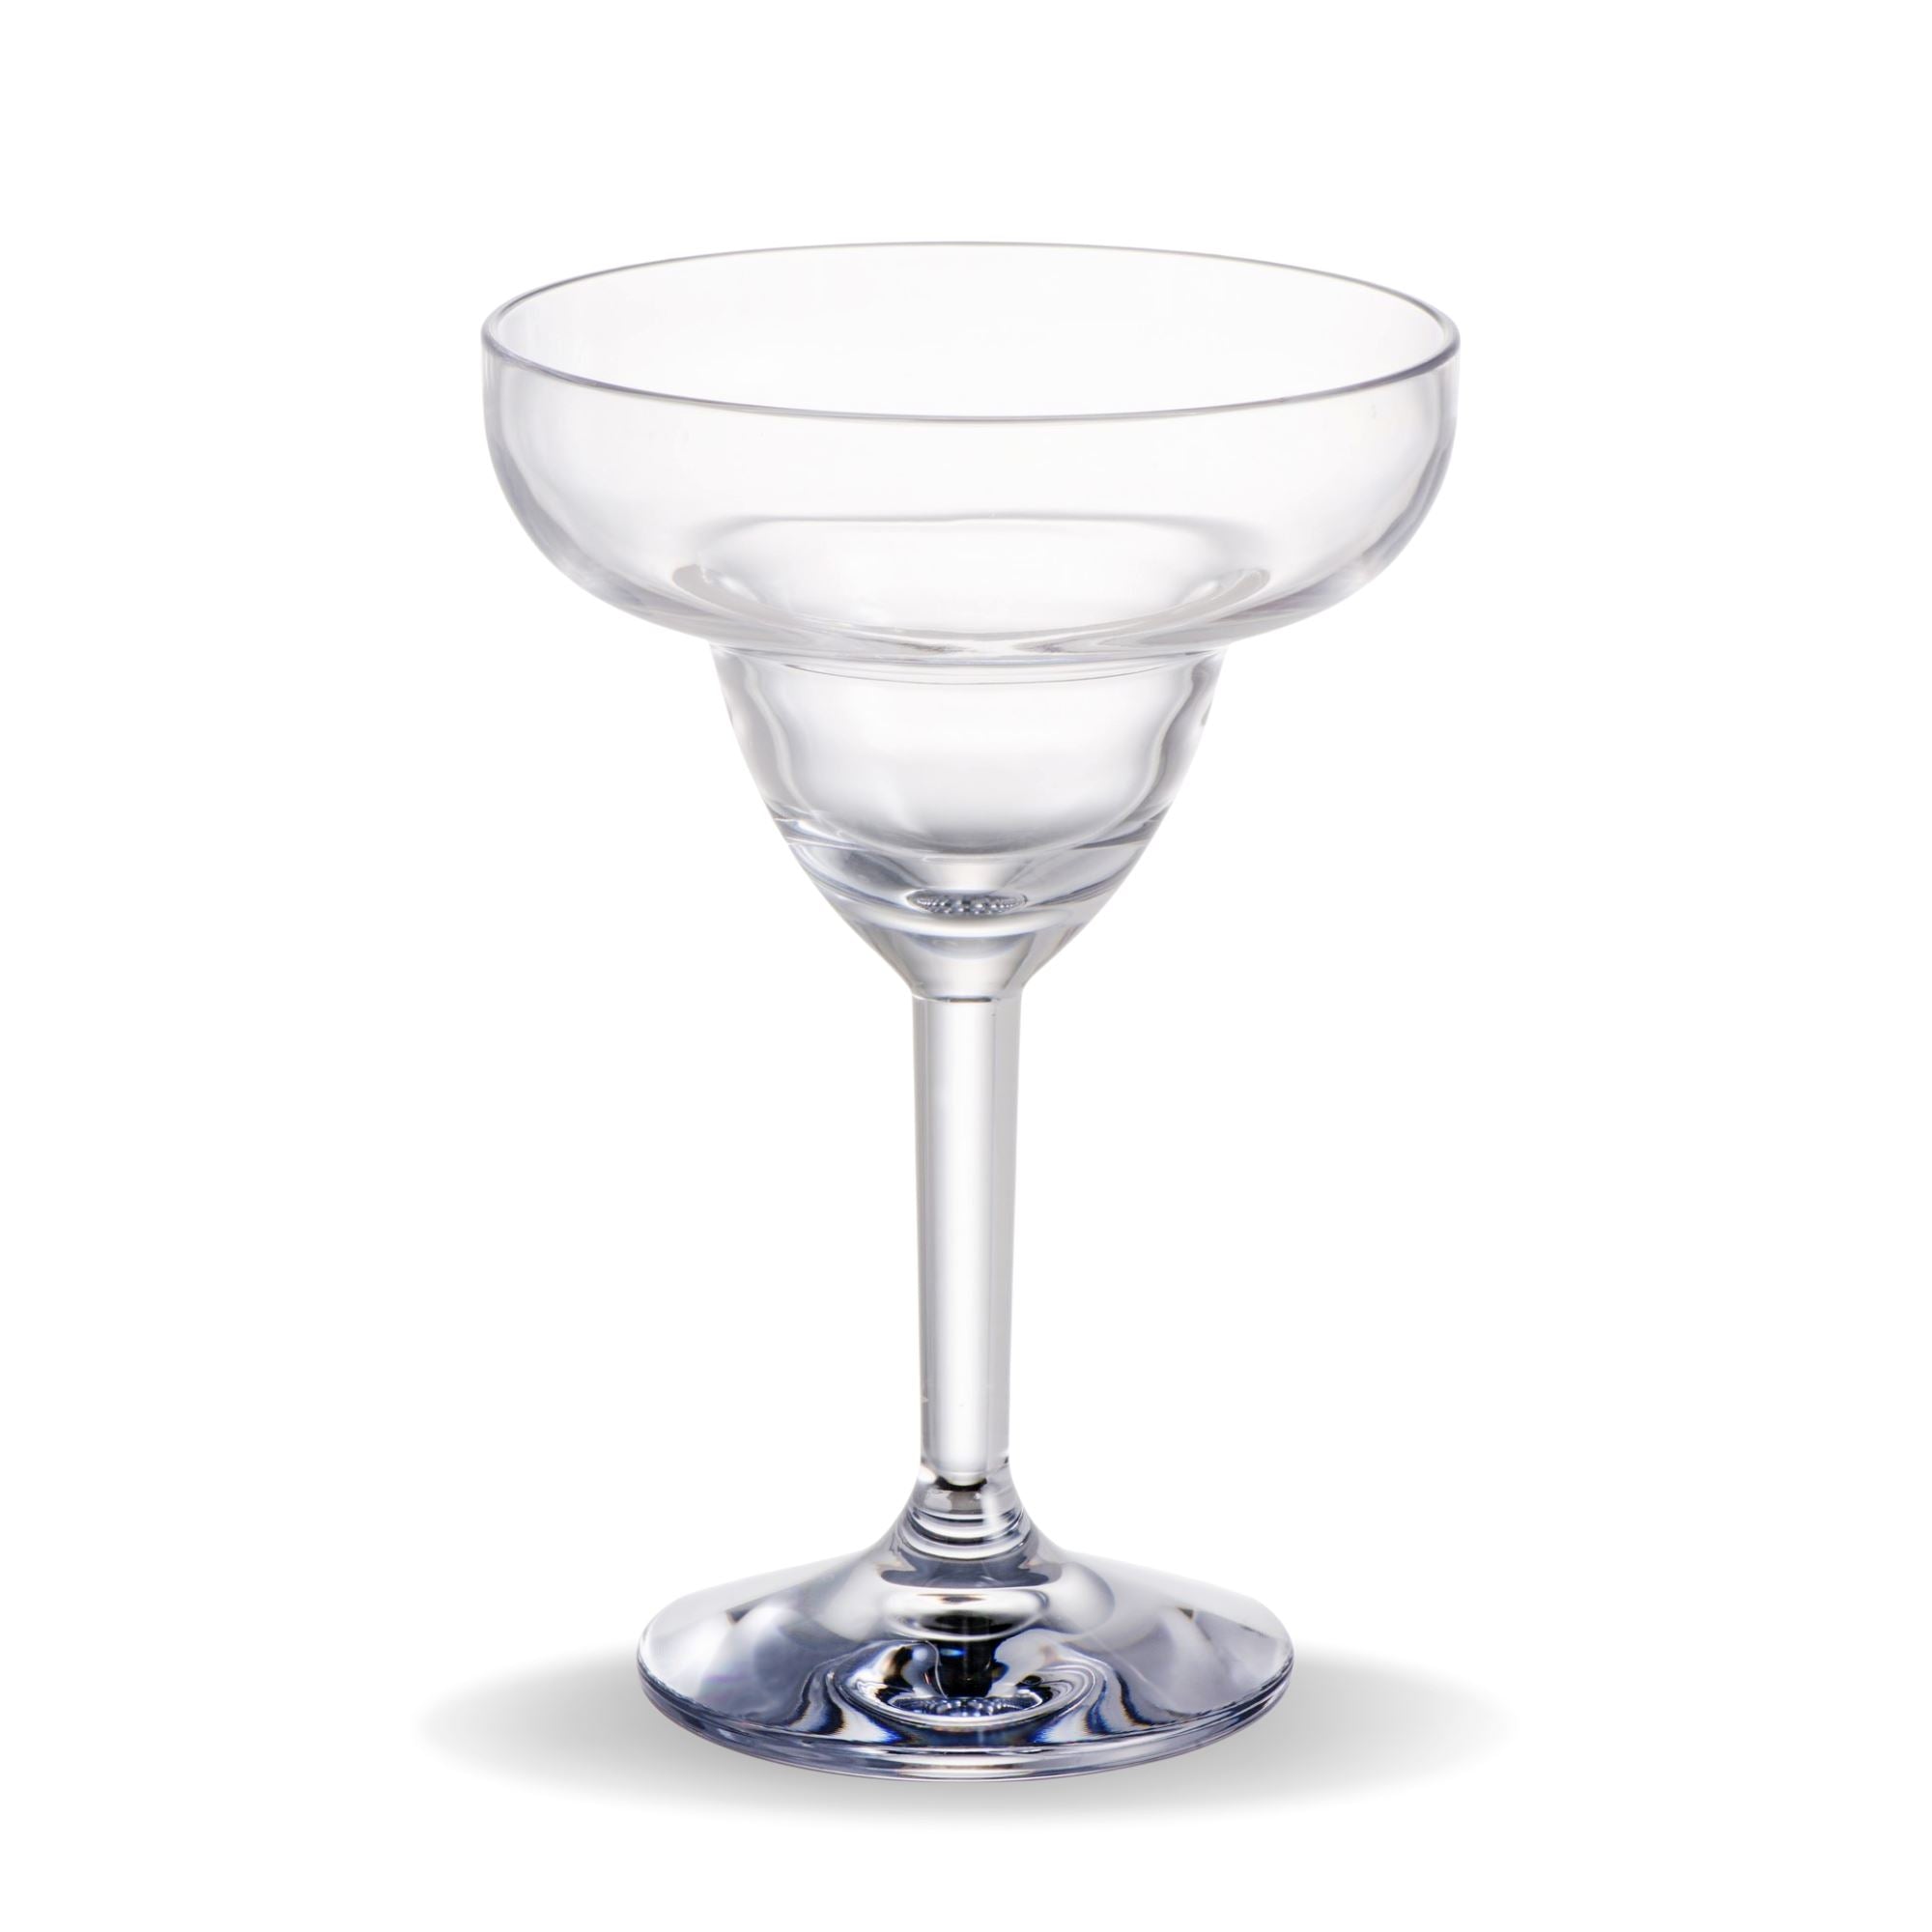 Unbreakable Margarita Glasses 315ml - Set of 4 Cocktail Glass D-STILL Drinkware 